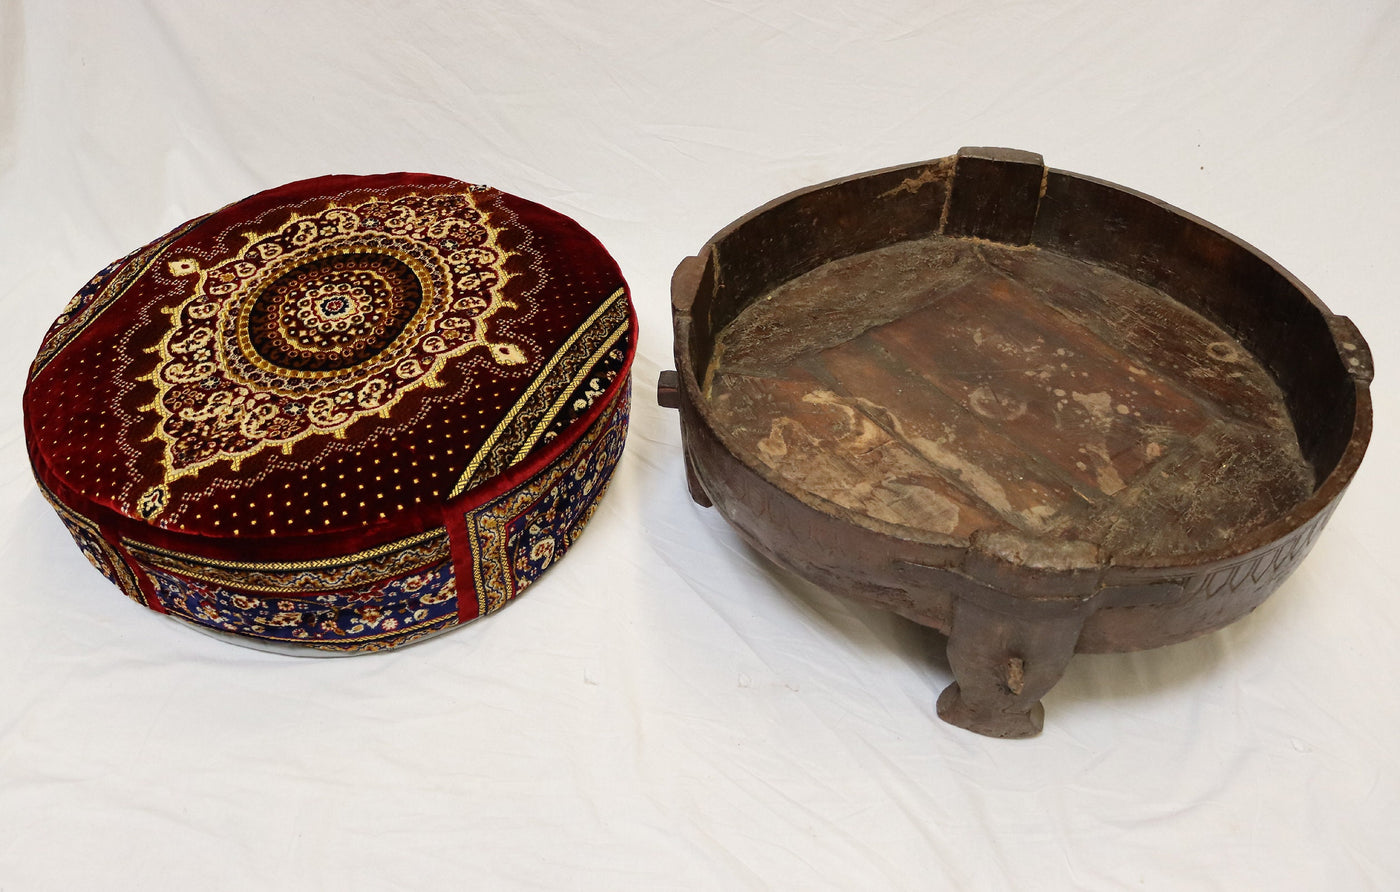 Antik orient indien Stuhl Hocker holz und samtweichen Teppich  Chakki 'Reismühlentisch' aus Holz und Eisen Couchtisch Hocker oder Ottomane  Orientsbazar   